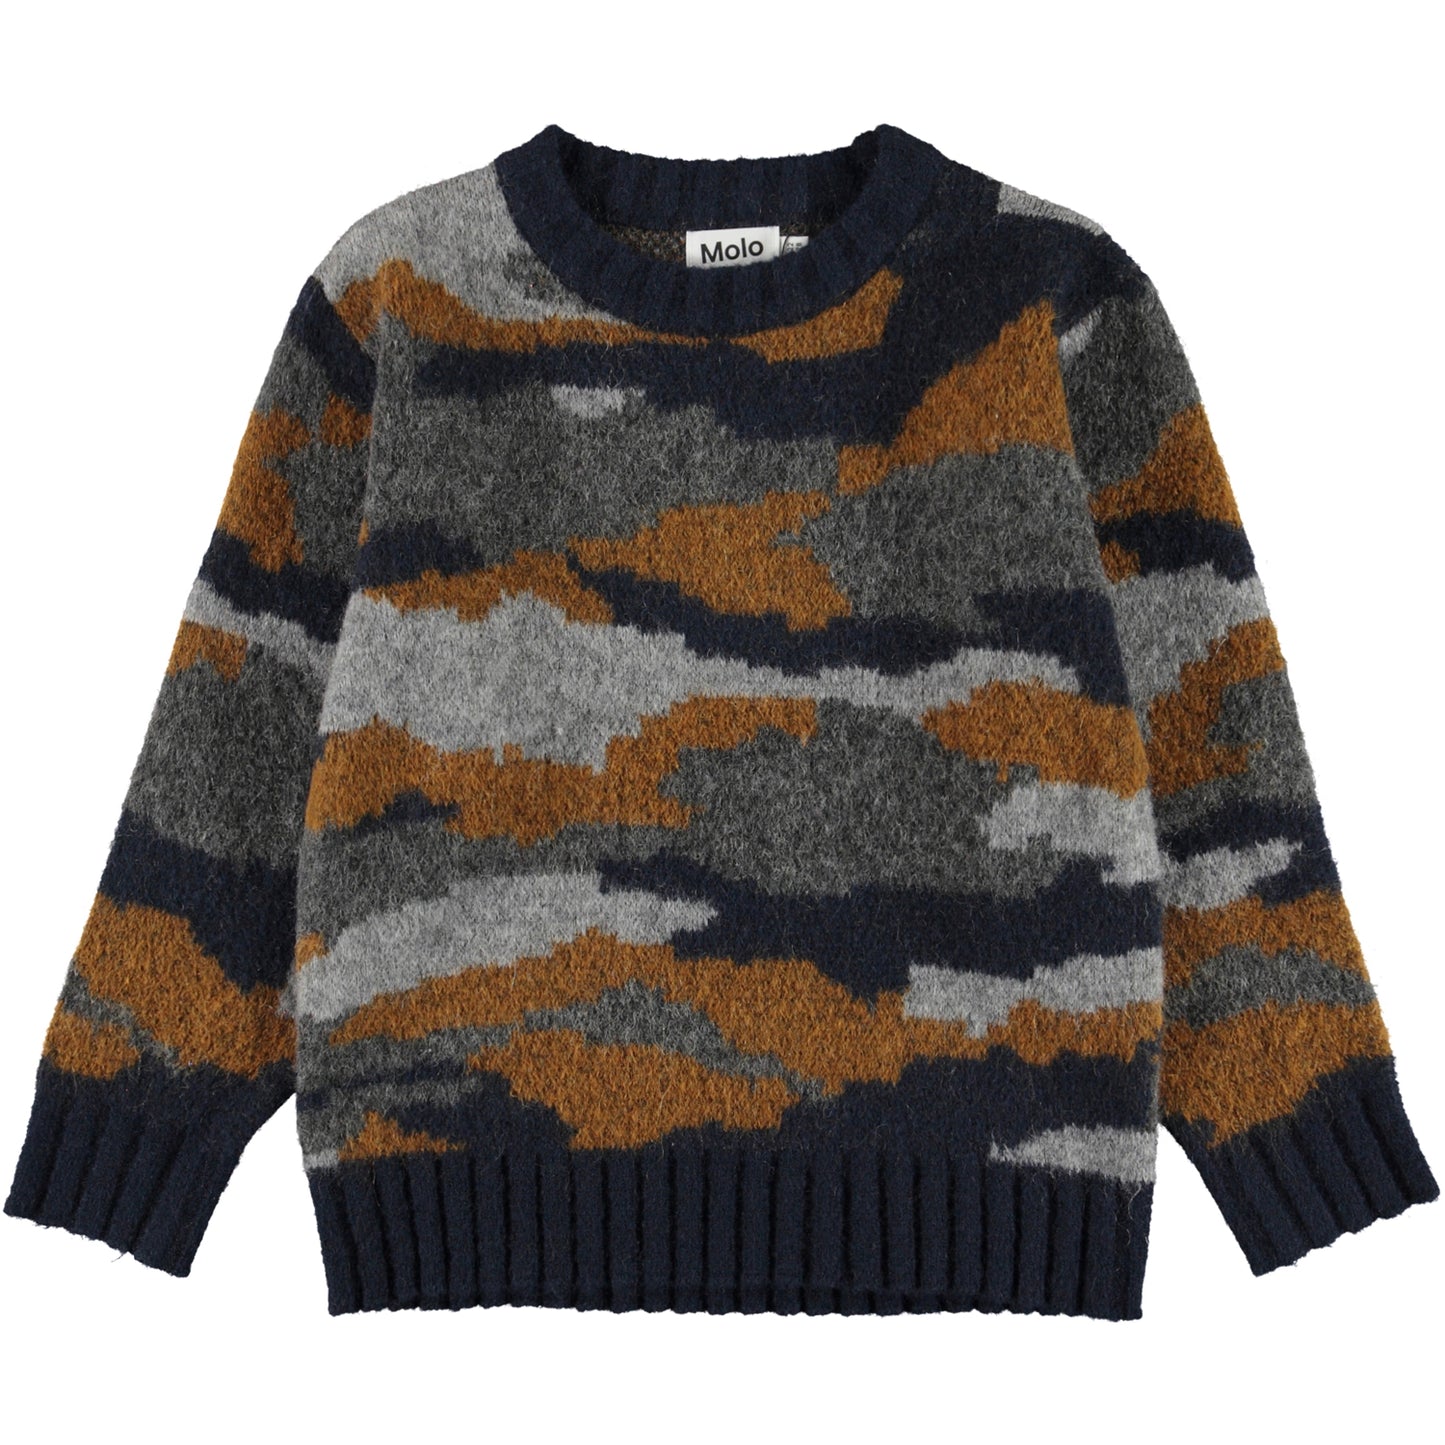 Molo Bello Camo Knit Sweater